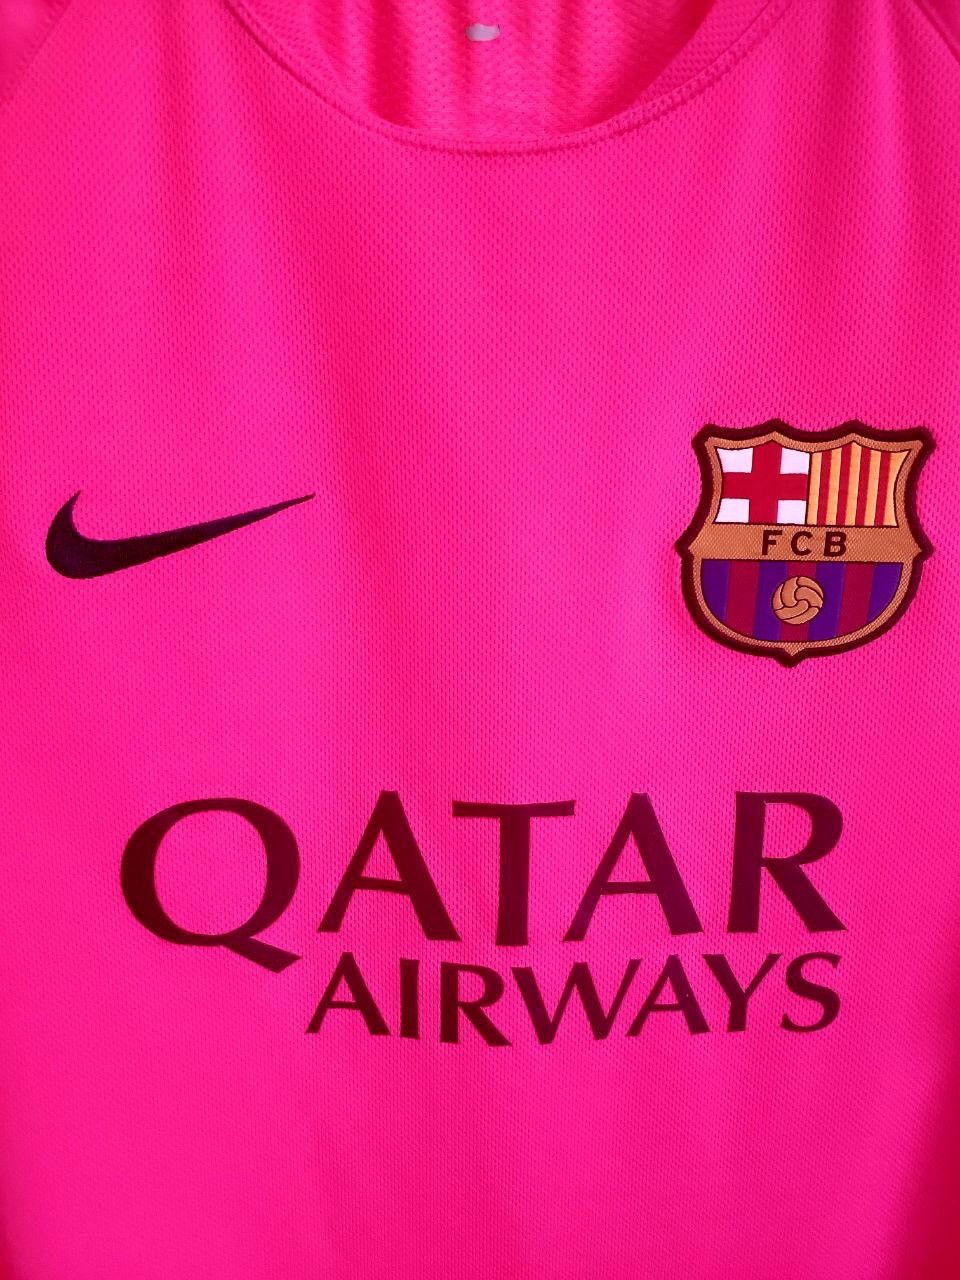 Nike FC Barcelona Training Jersey Football Shirt Nike Mens Size L Size US L / EU 52-54 / 3 - 3 Thumbnail